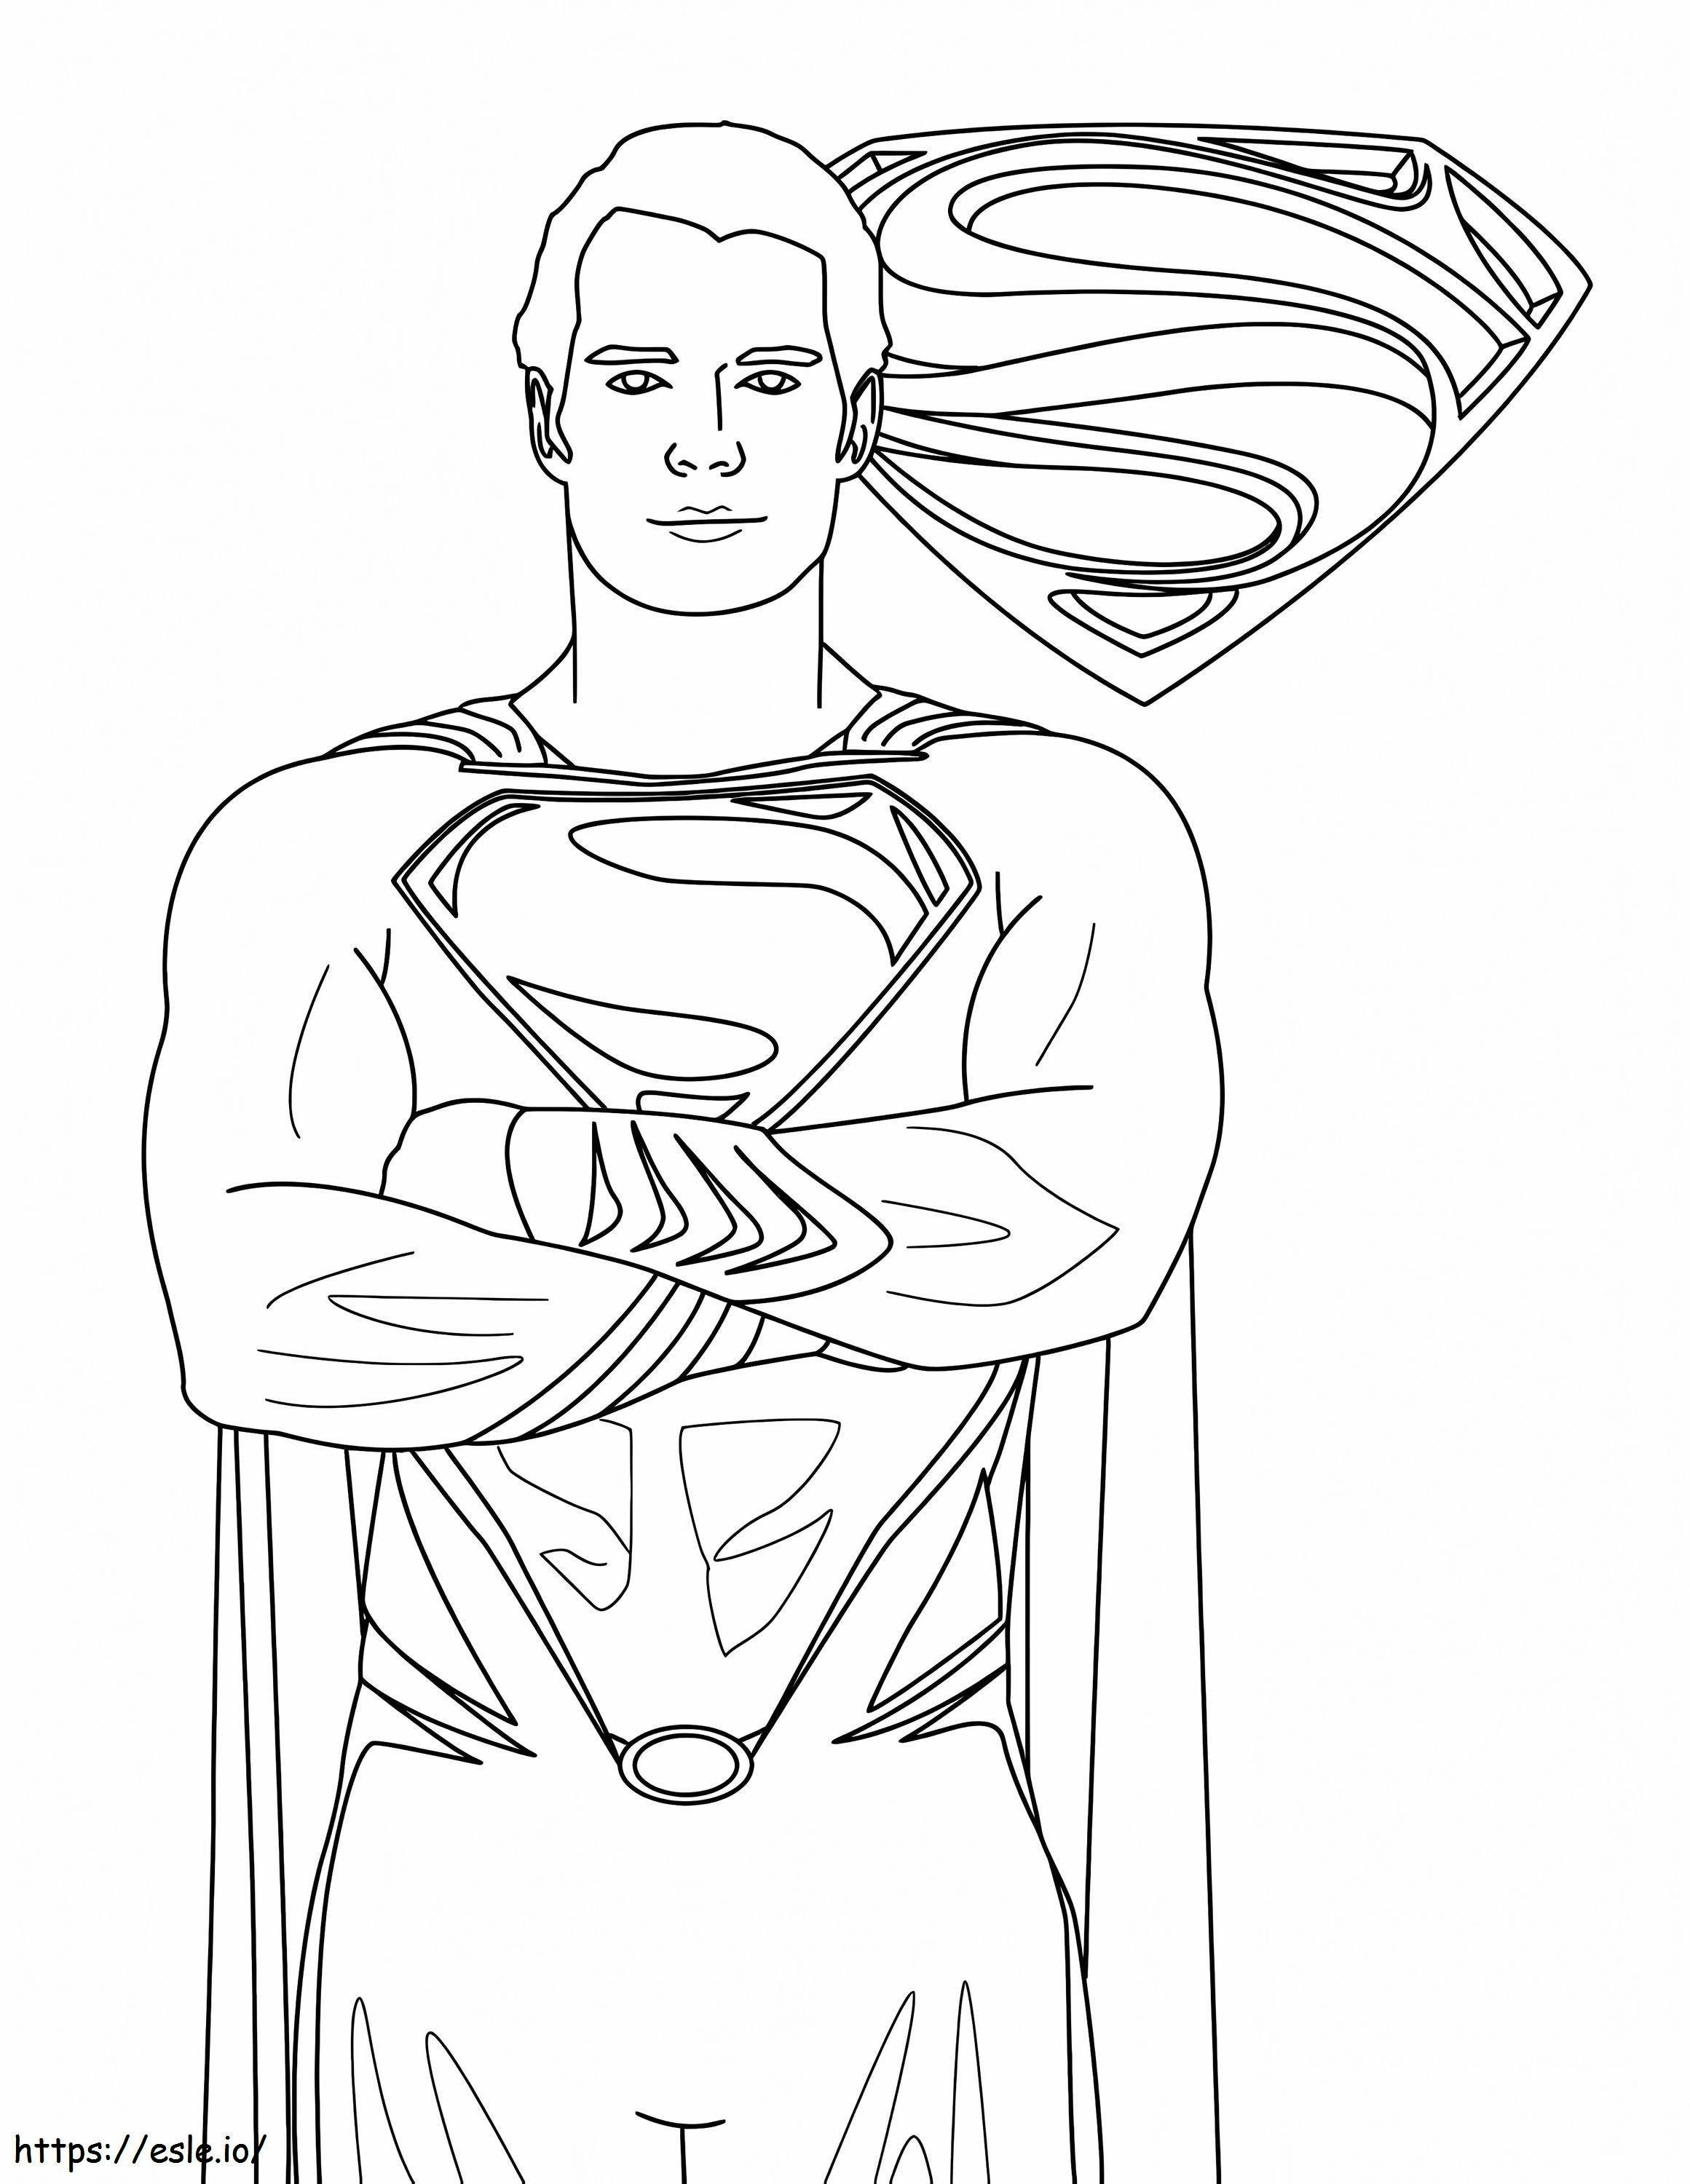 Dobry Supermanie kolorowanka